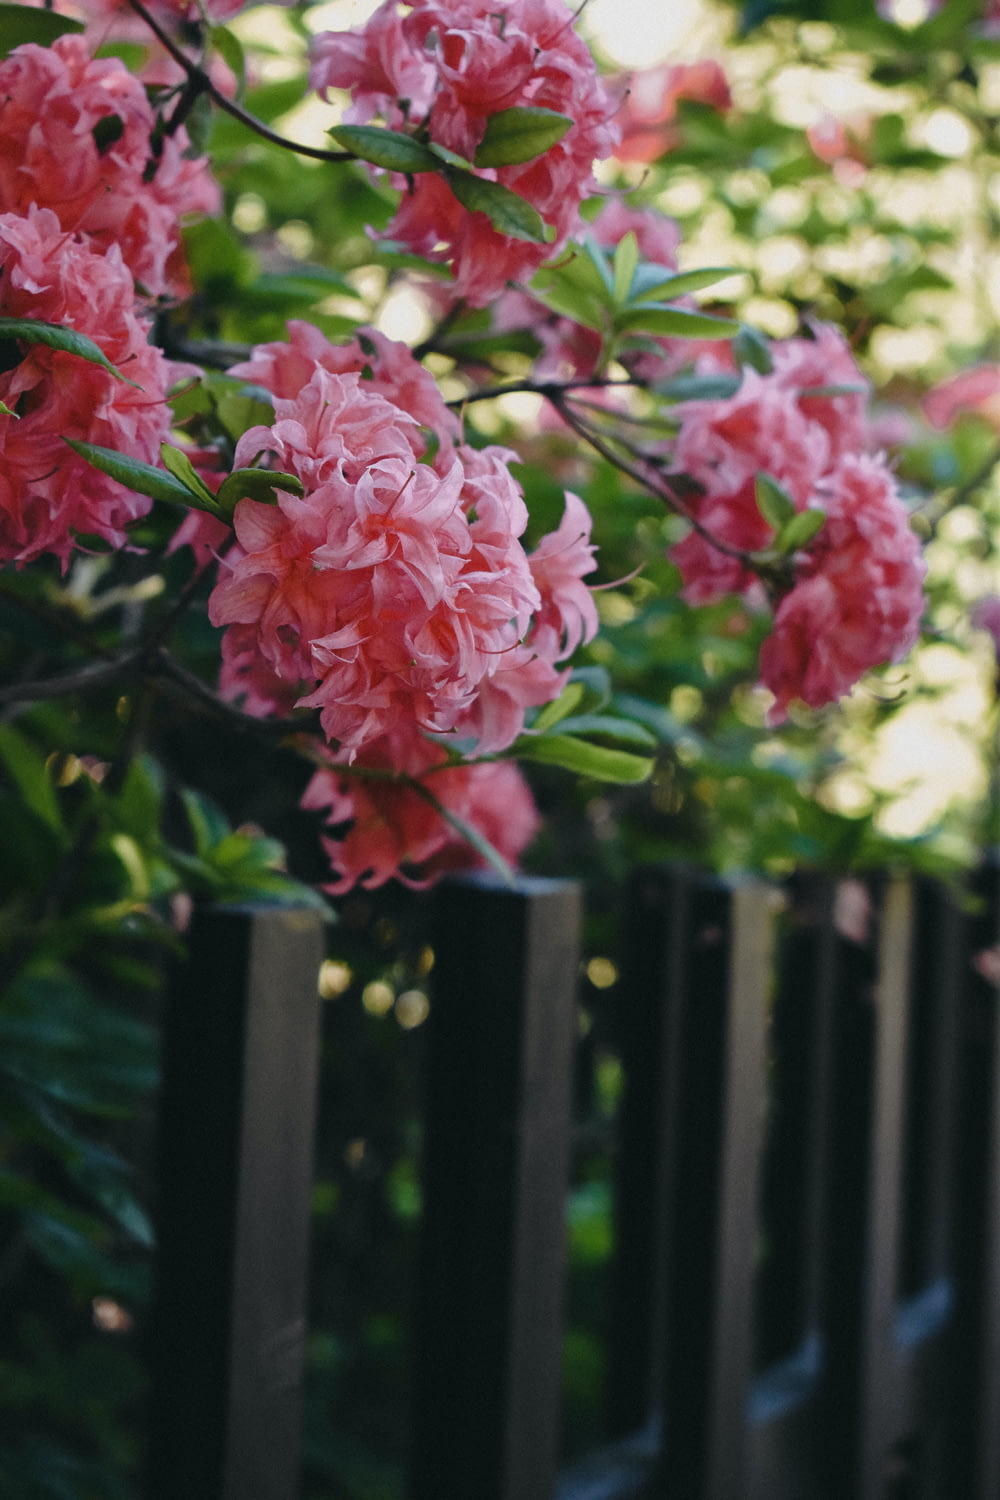 Des fleurs roses poussent sur une clôture noire